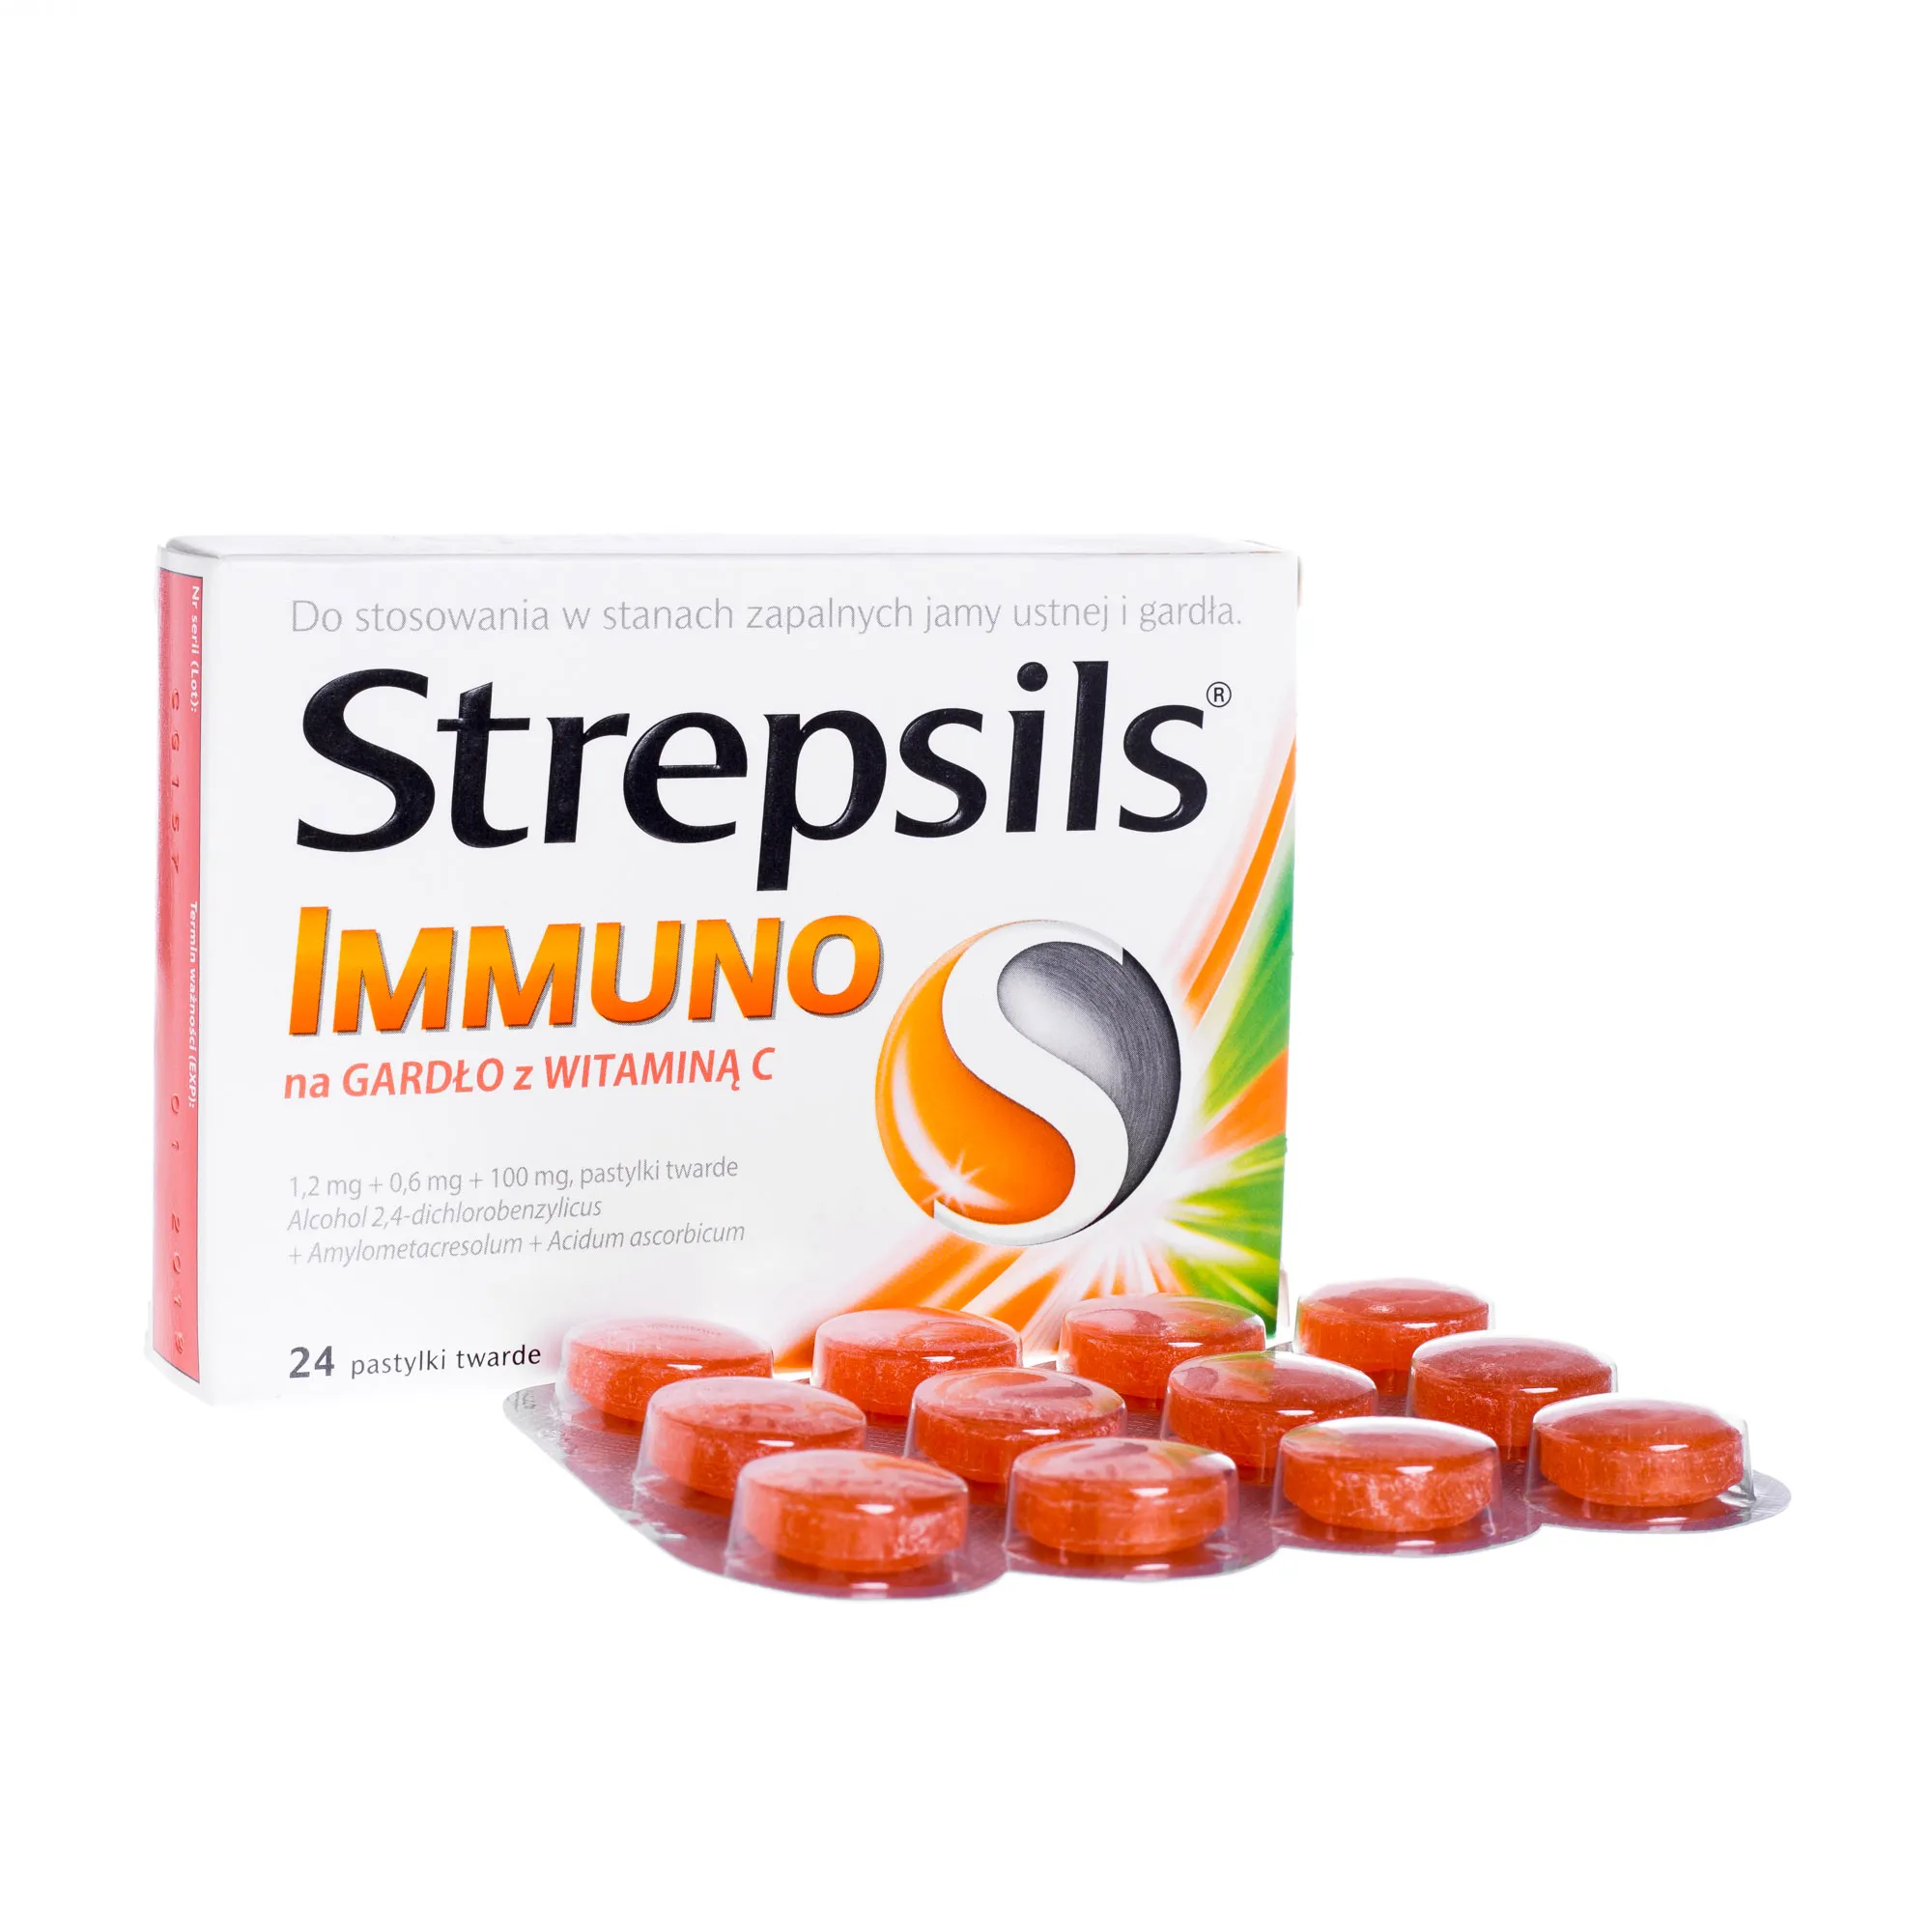 Strepsils Immuno na gardło z witaminą C, 24 tabletki